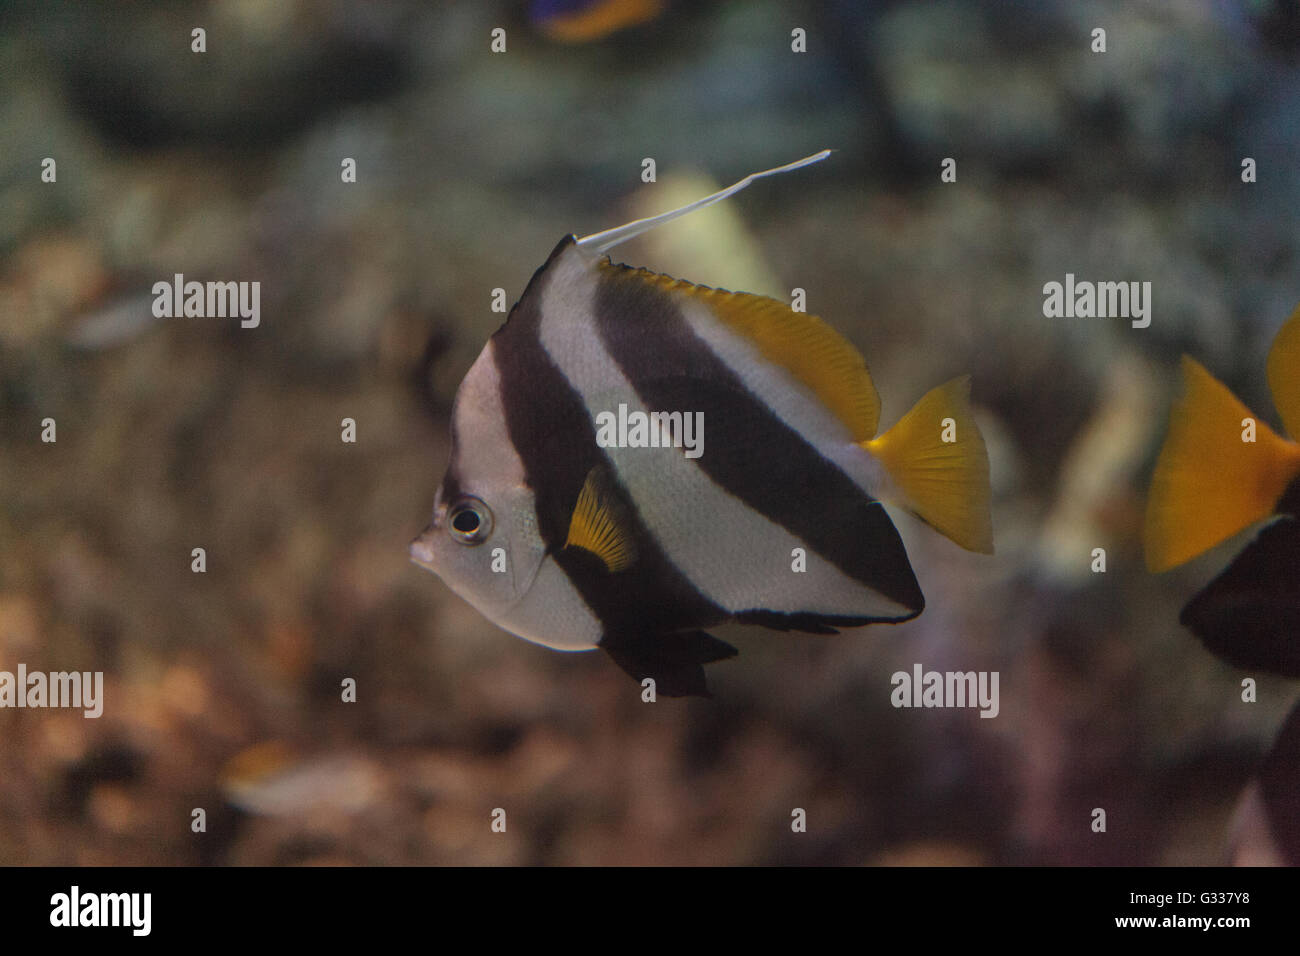 Pennant Butterflyfish Heniochus acuminatus ha le strisce bianche e nere con una coda gialla e grandi occhi. Foto Stock